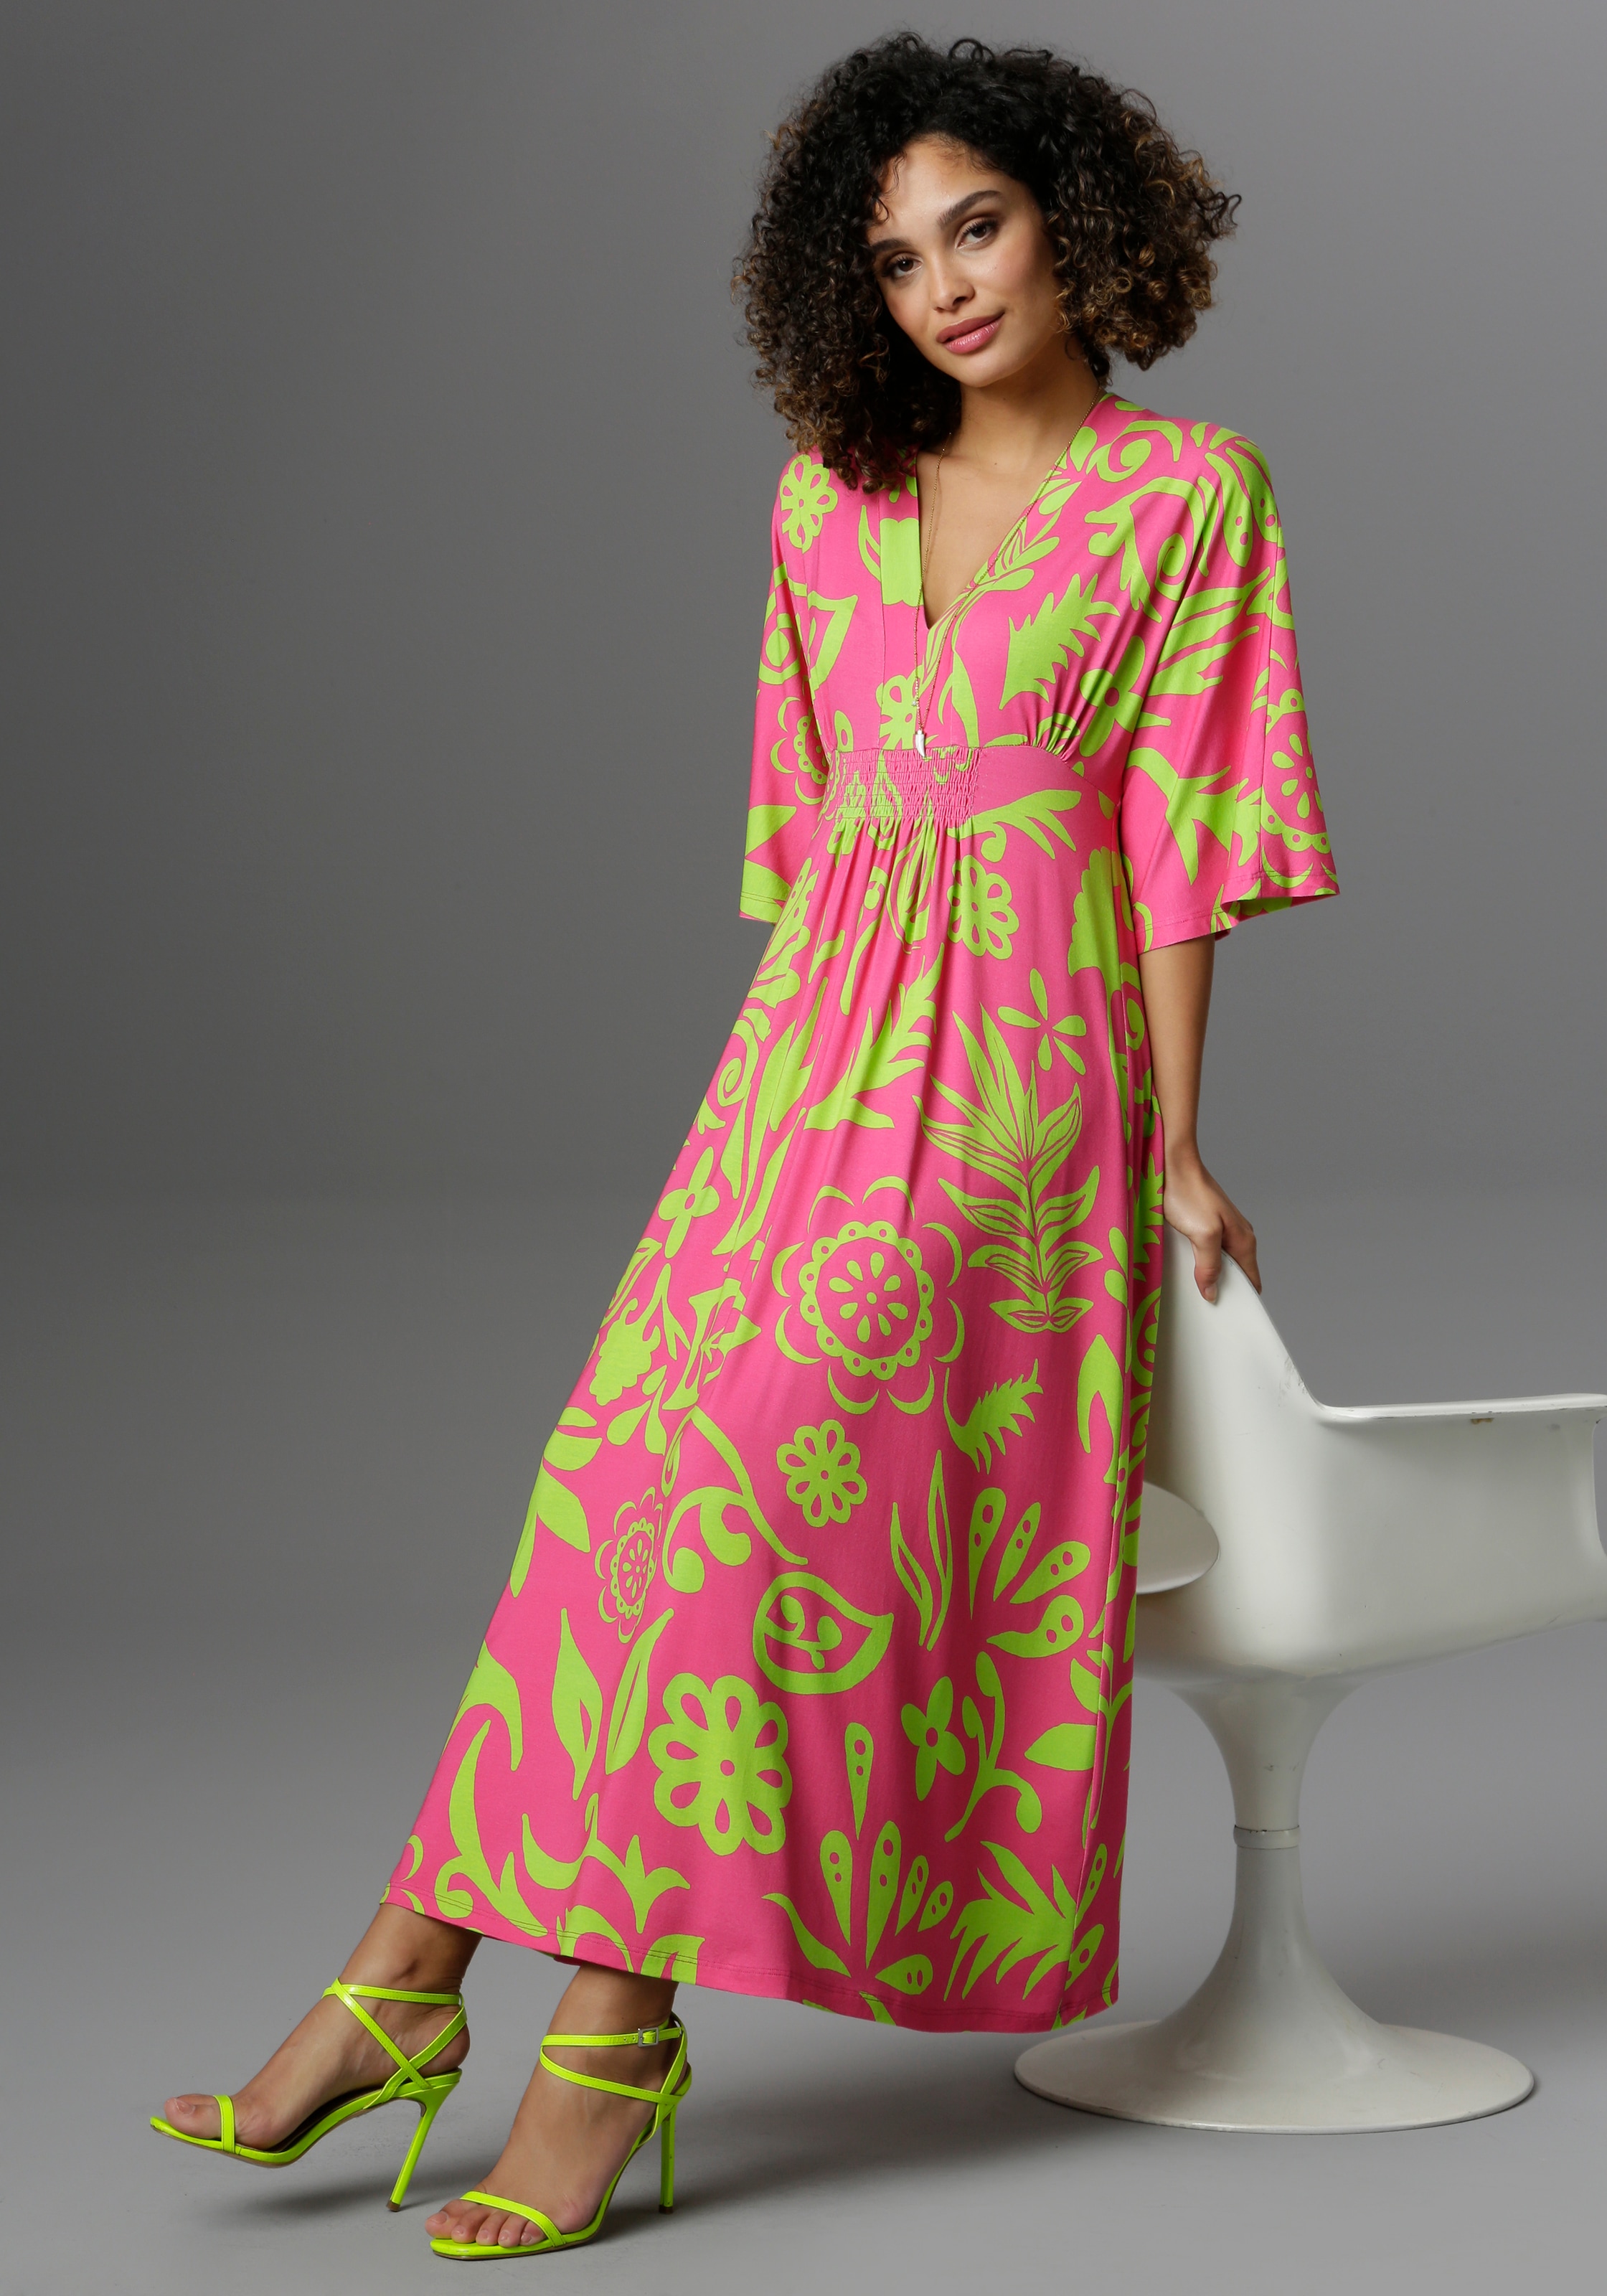 Pinkes Kleid online kaufen | Pinkfarbene Kleider jetzt bei OTTO